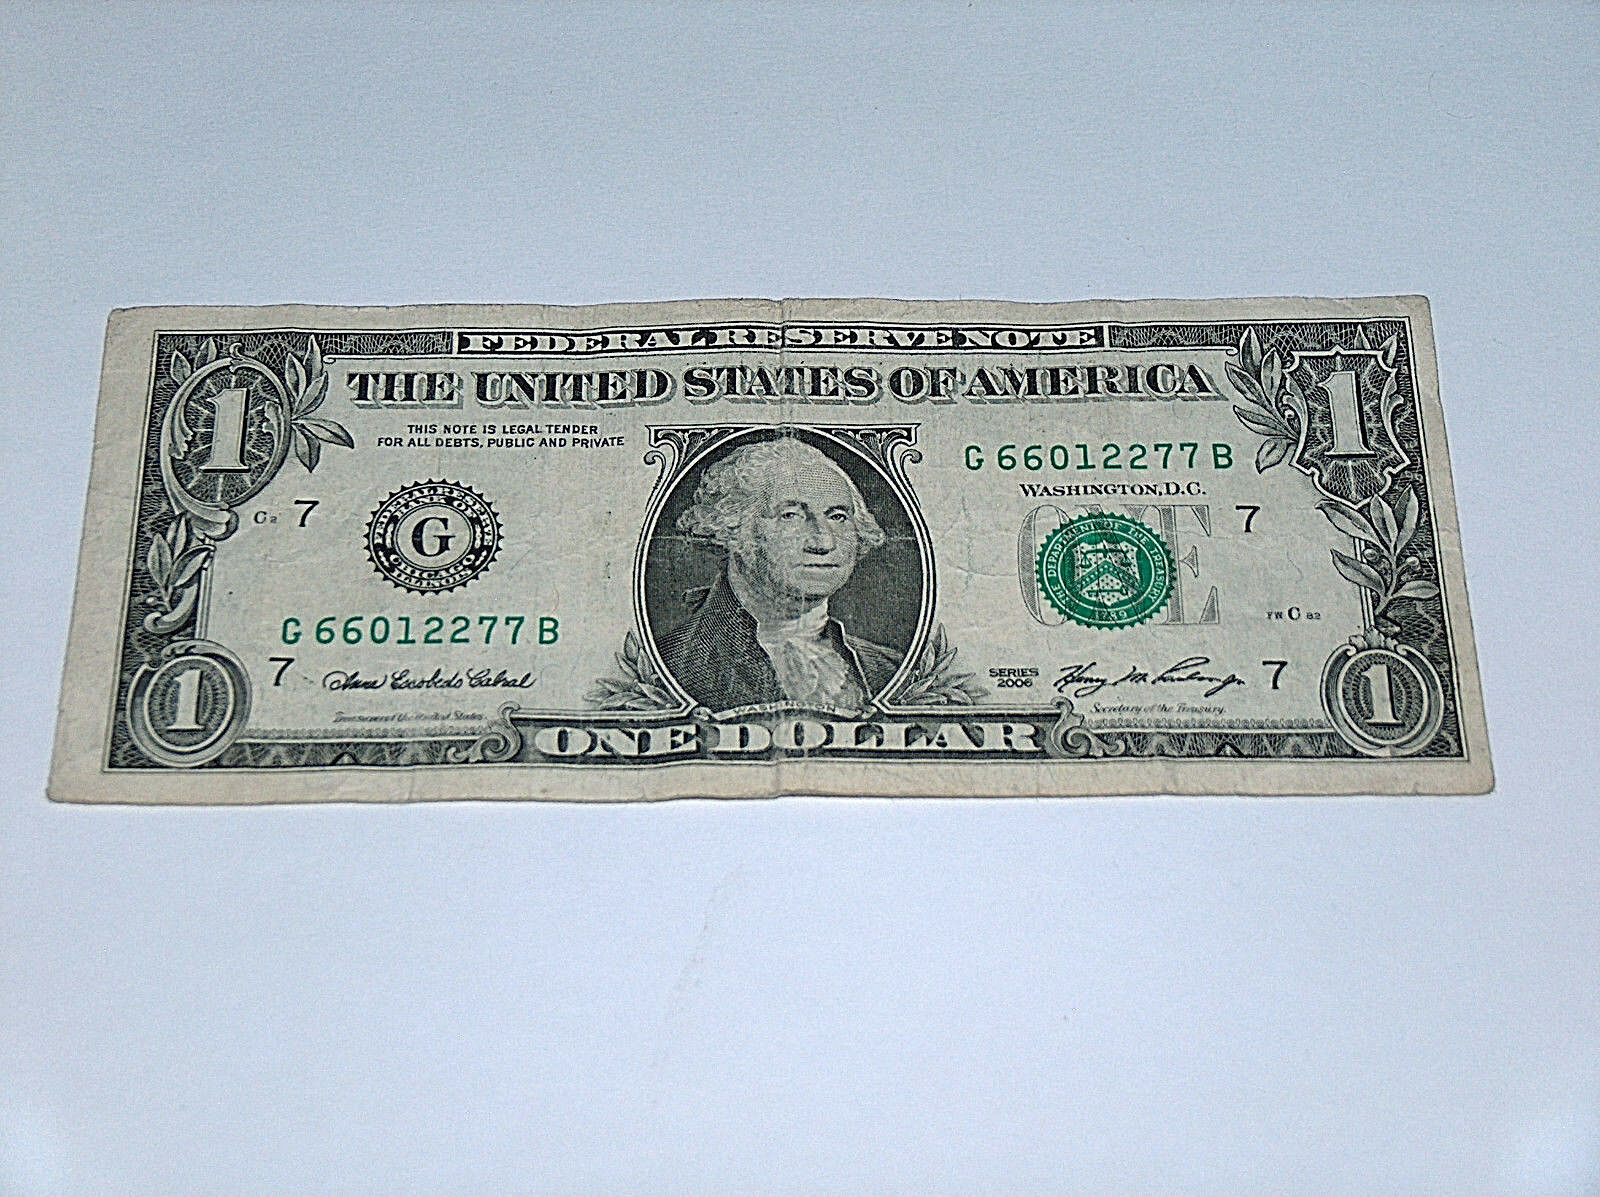 1985 50 dollar bill serial number lookup